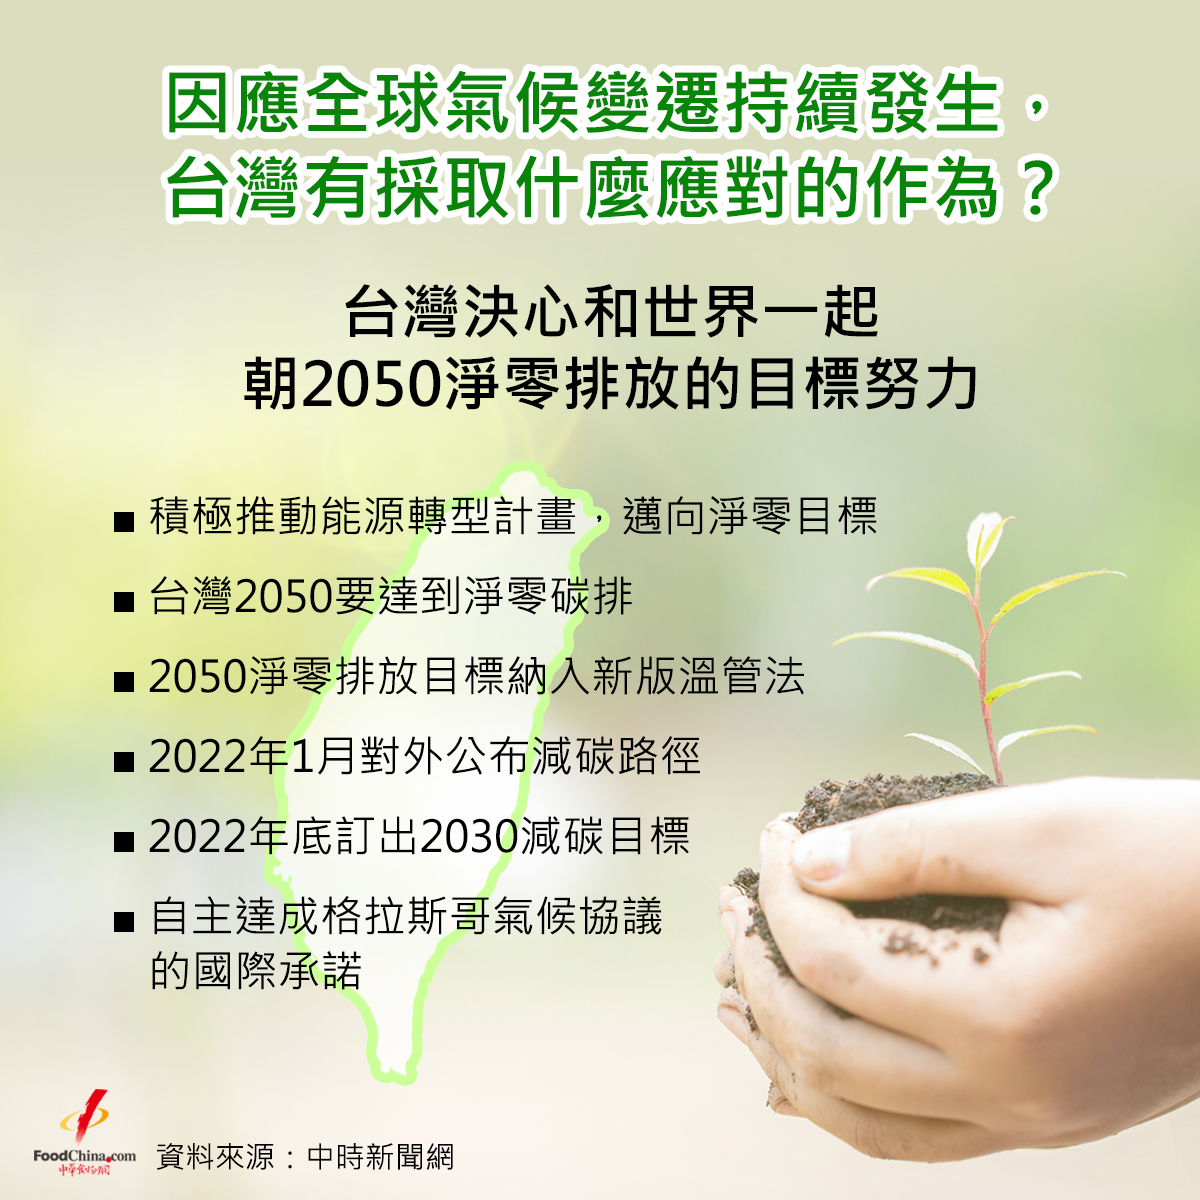 台灣決心和世界一起朝2050淨零排放的目標努力